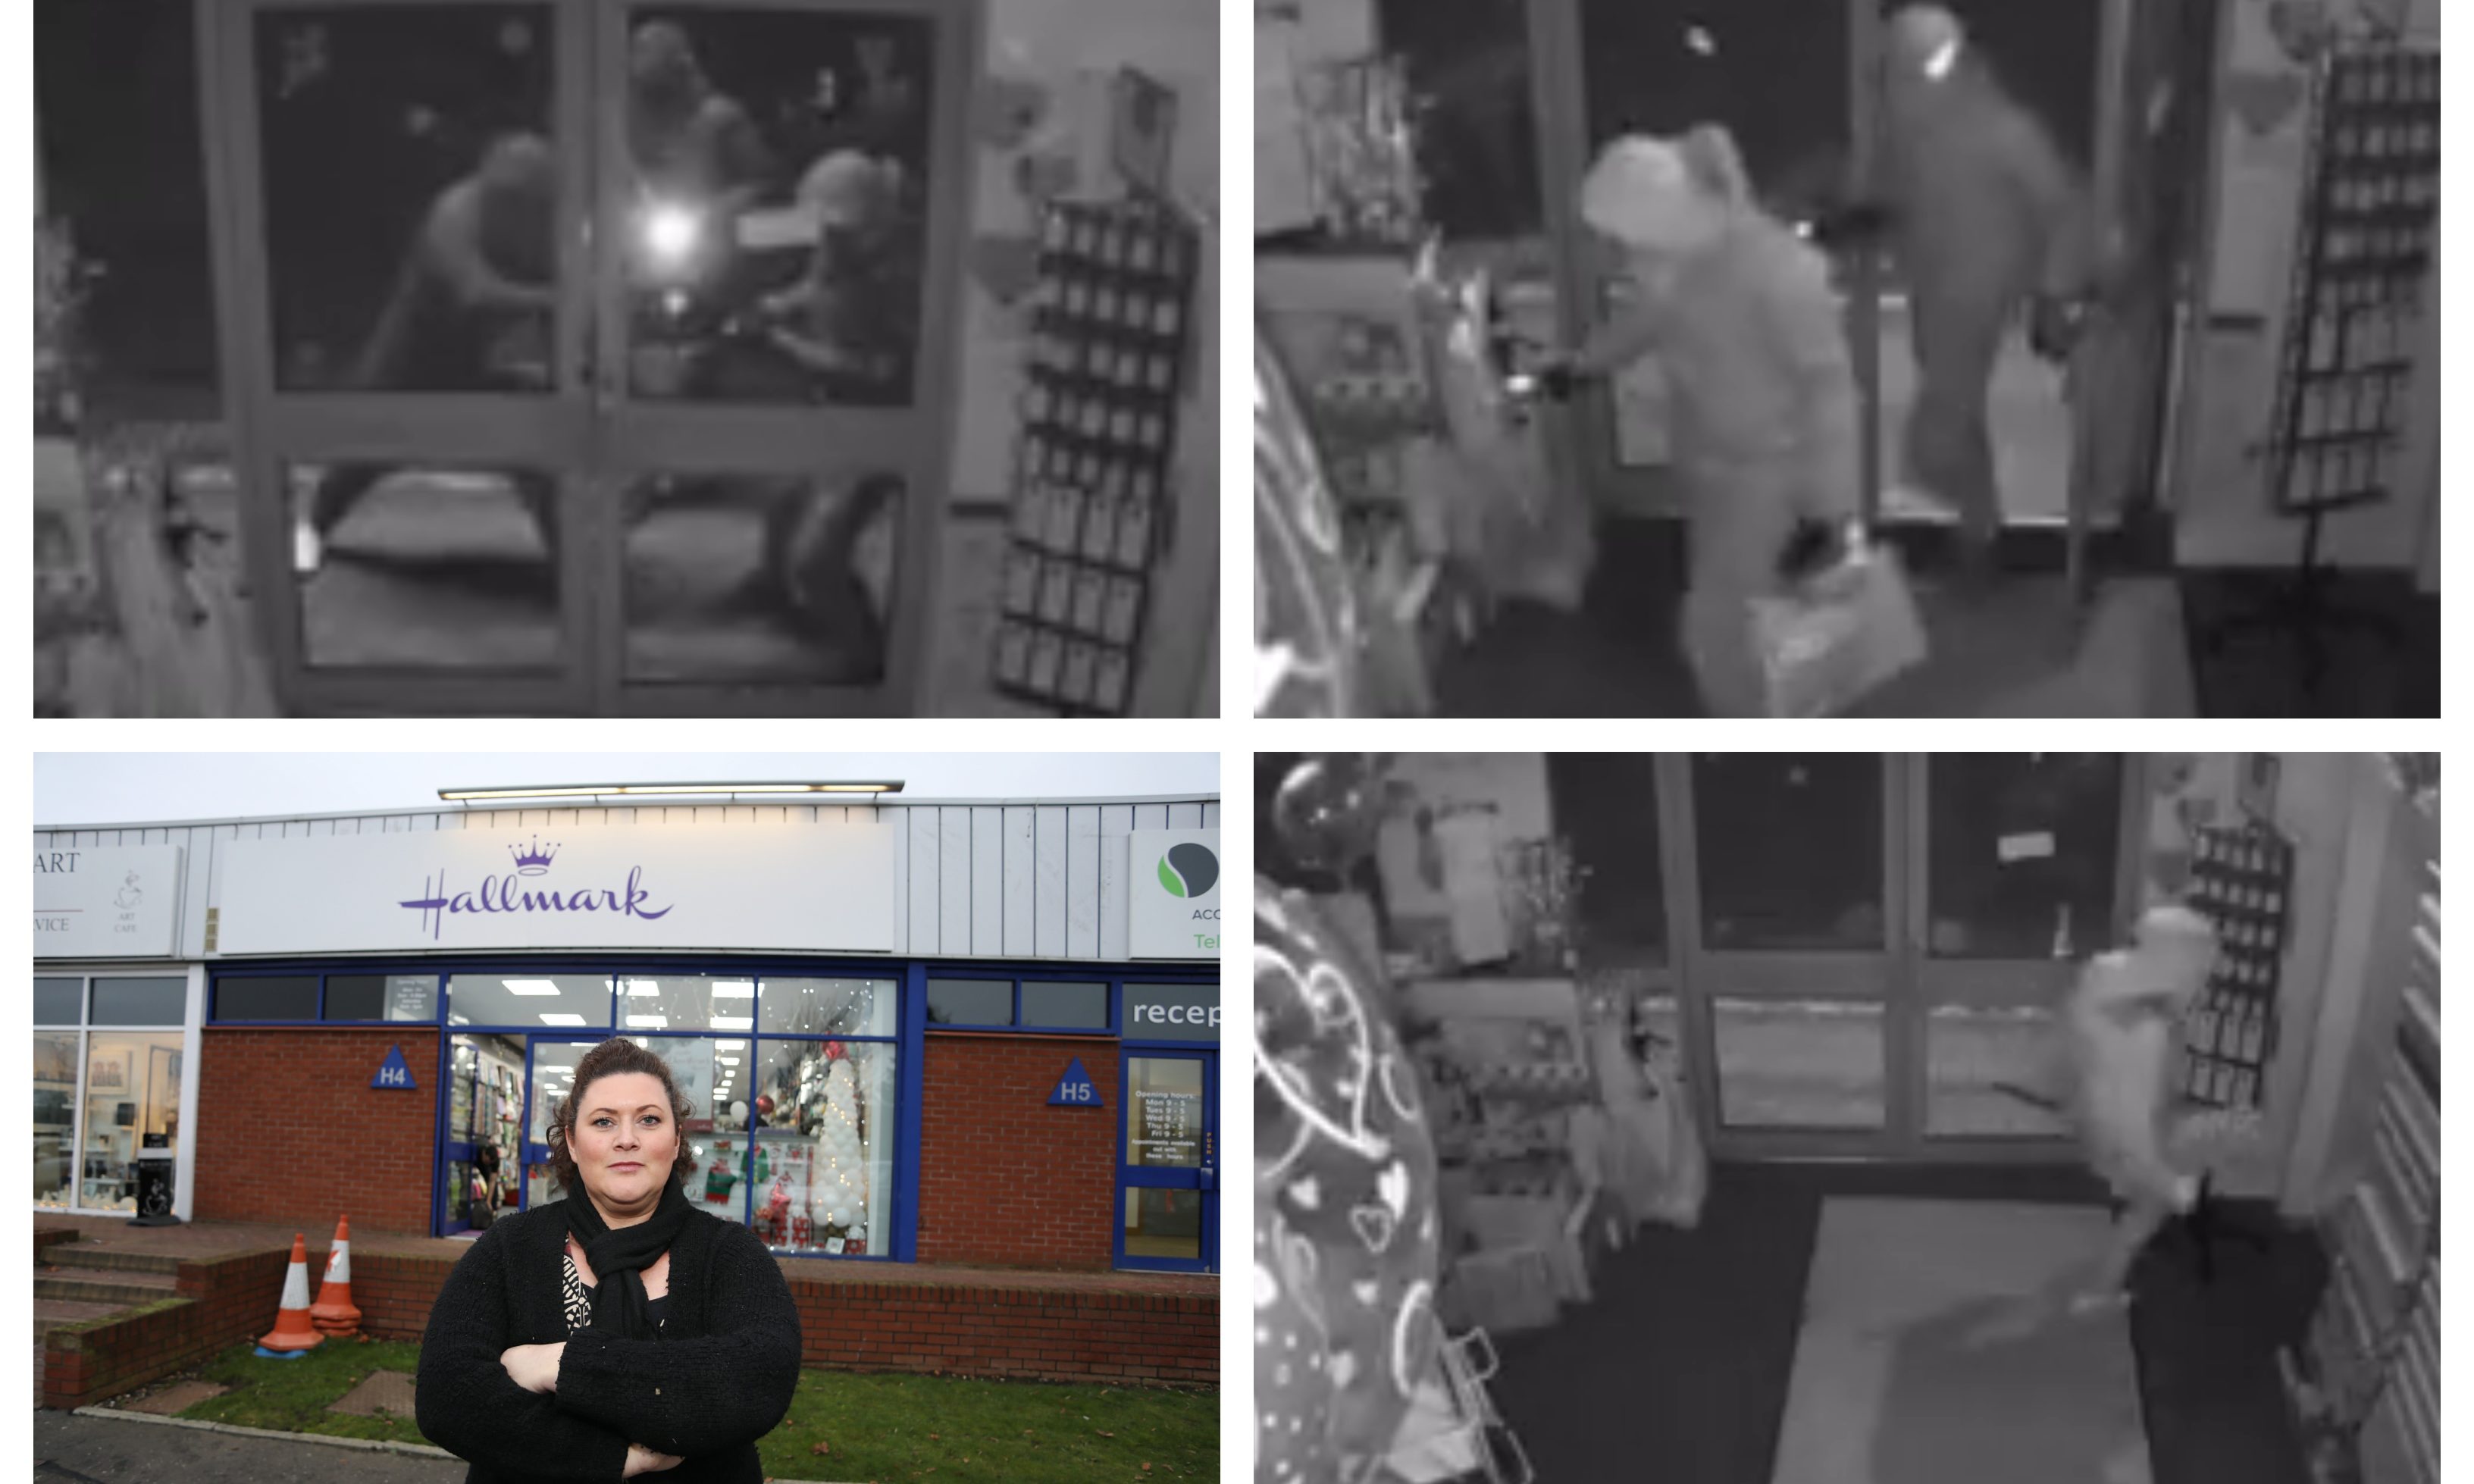 The Hallmark raid was captured on CCTV. Bottom left shows owner Debbie Devine.